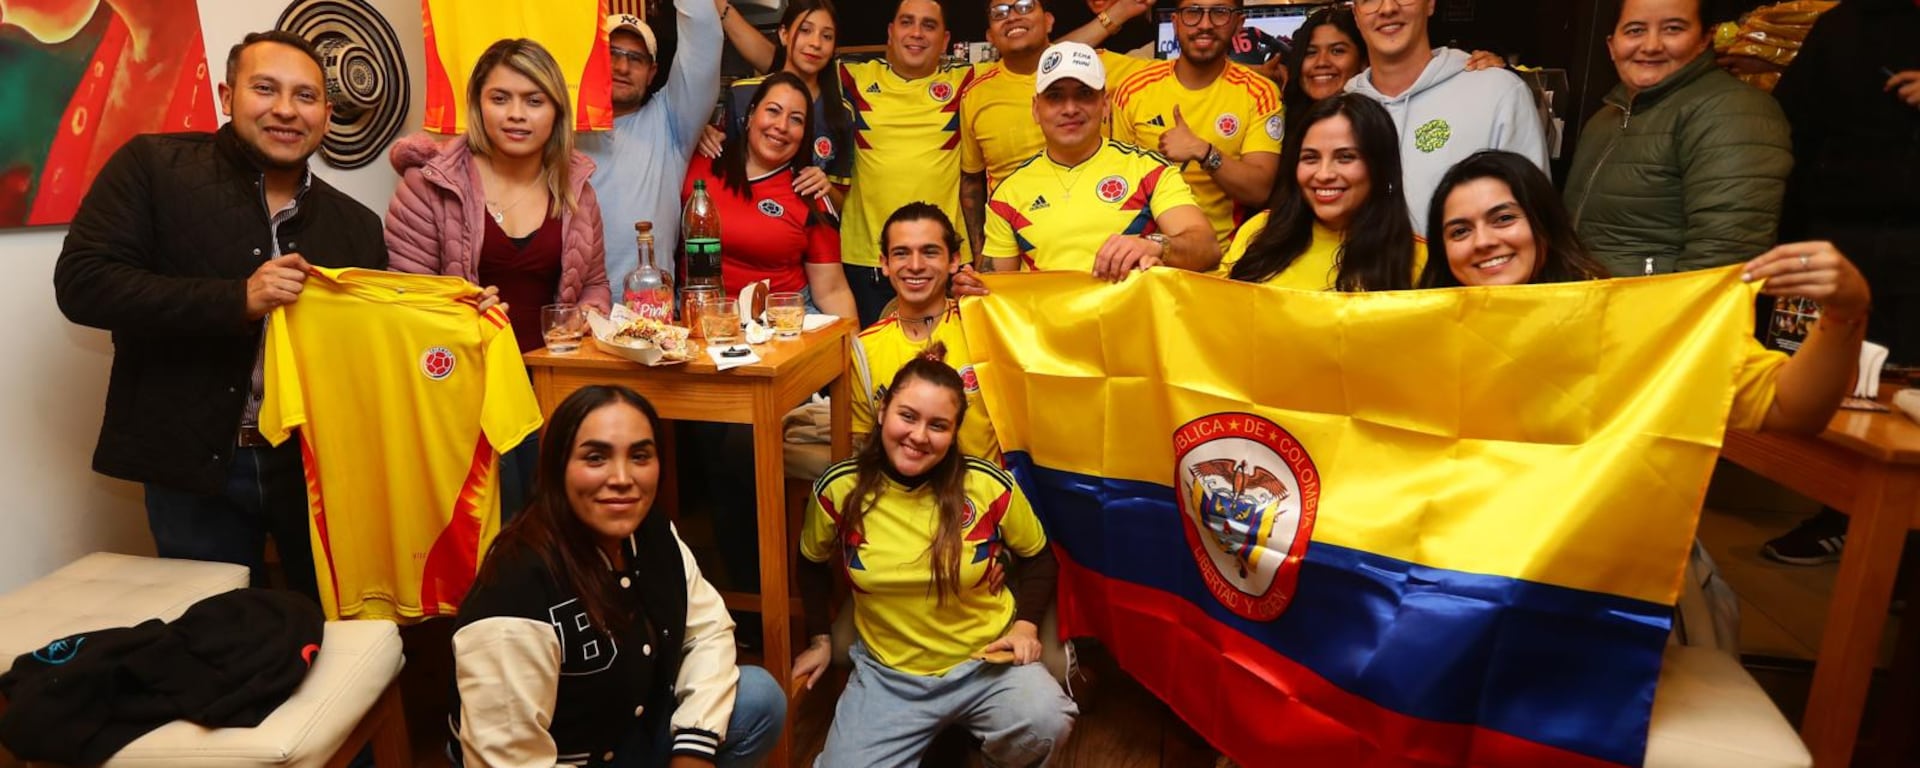 La Copa América lejos de casa: así viven la fiesta del fútbol los colombianos, brasileños y argentinos que residen en Lima